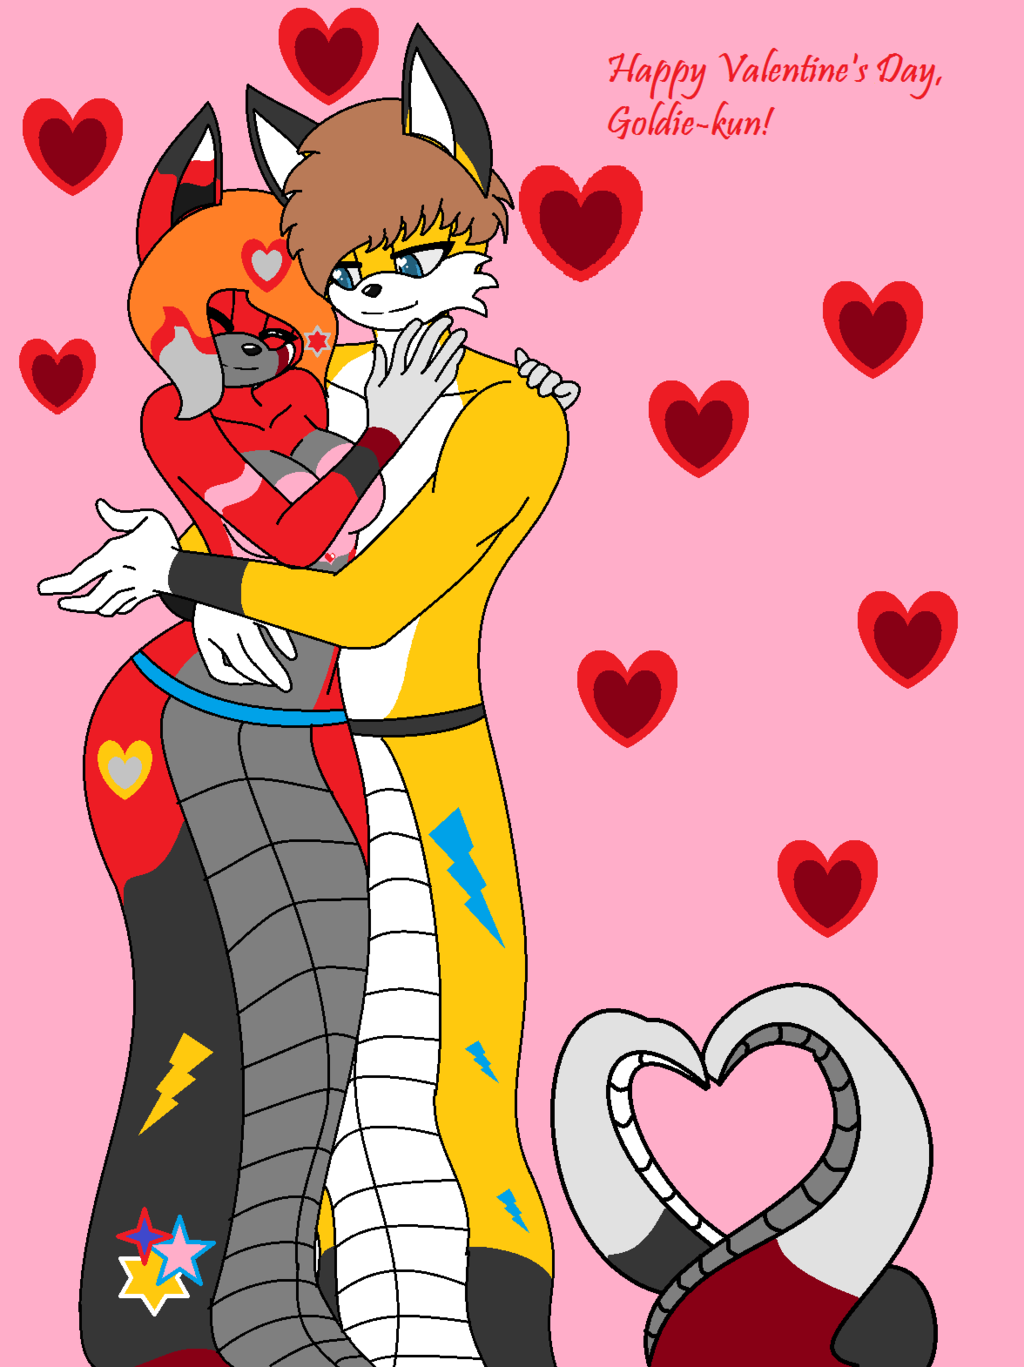 Most recent image: Happy Valentine's Day, Goldie~kun!